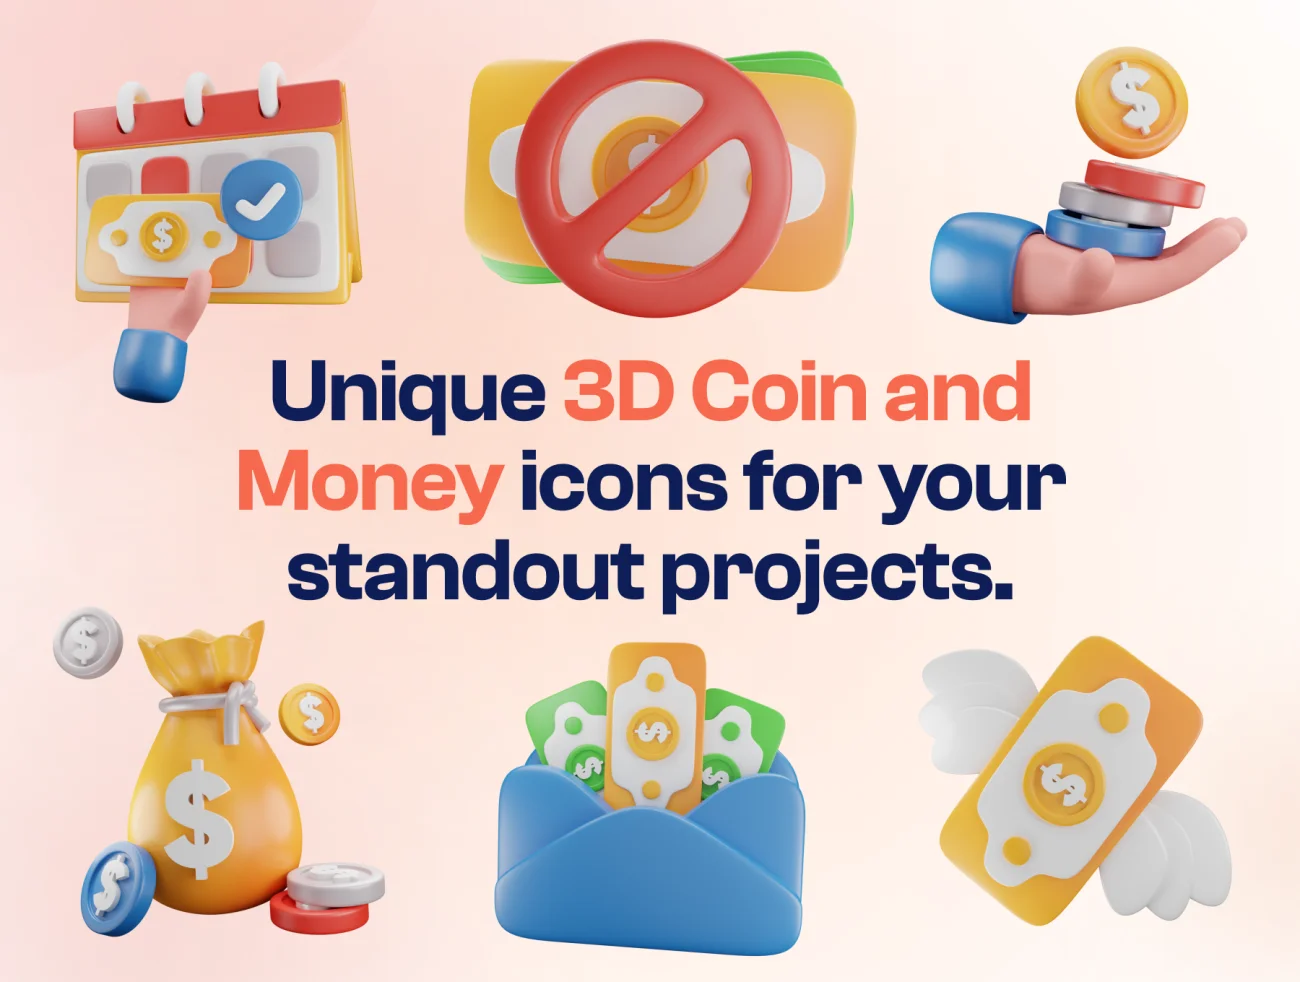 货币钱袋金币钱包3D图标套装 Mony - Money & Currency 3D Icon Set blender格式-3D/图标-到位啦UI